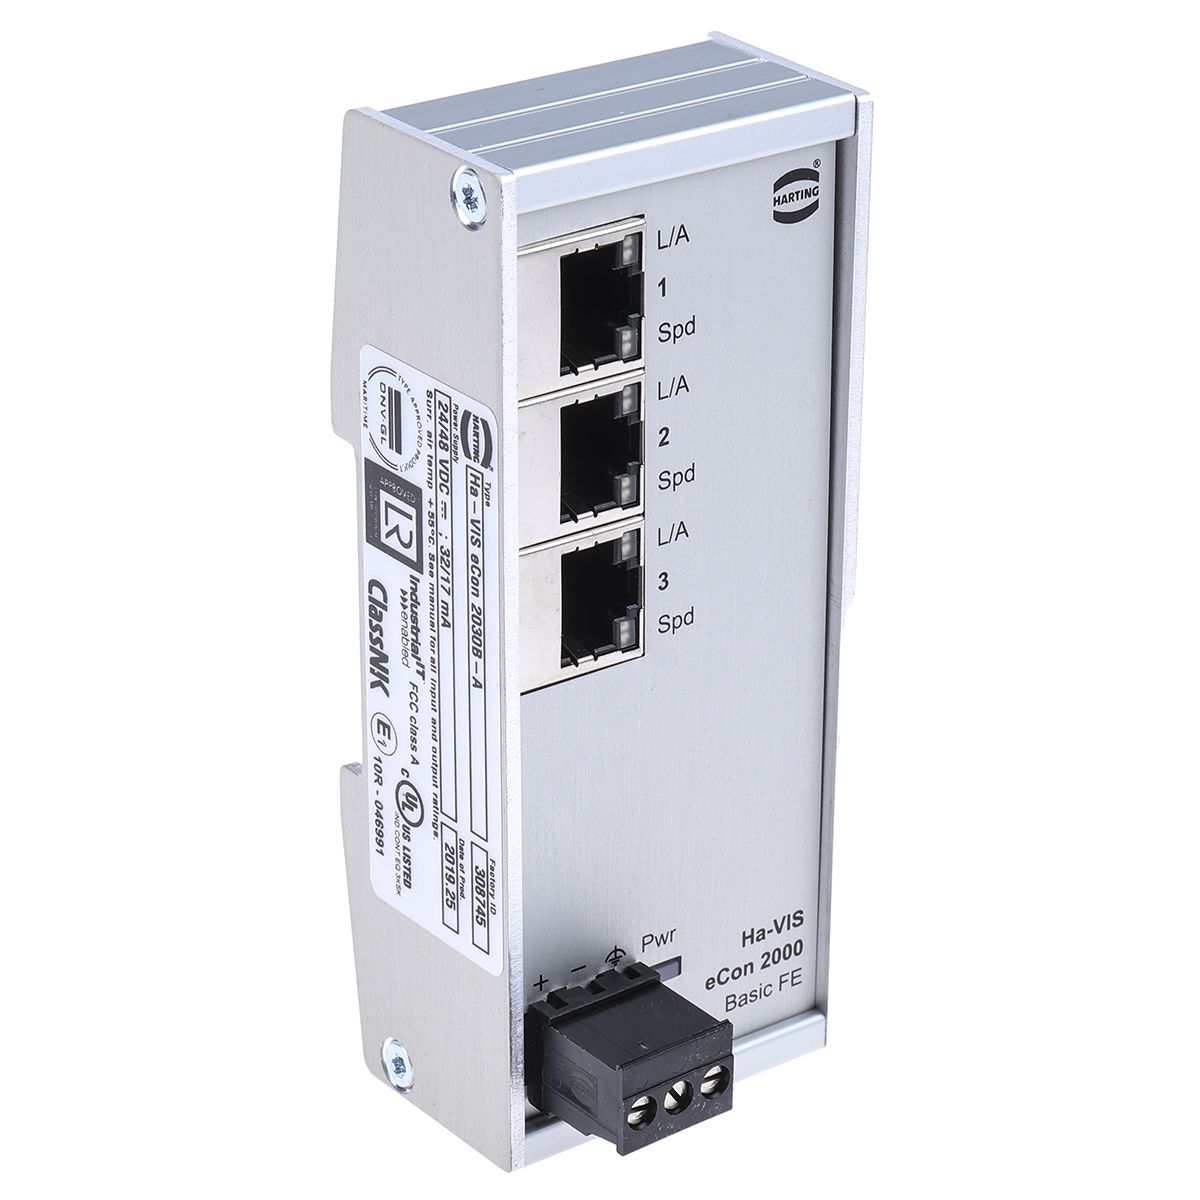 Harting DIN Rail Mount Ethernet Switch, 3 RJ45 Ports, 10/100Mbit/s Transmission, 24V dc